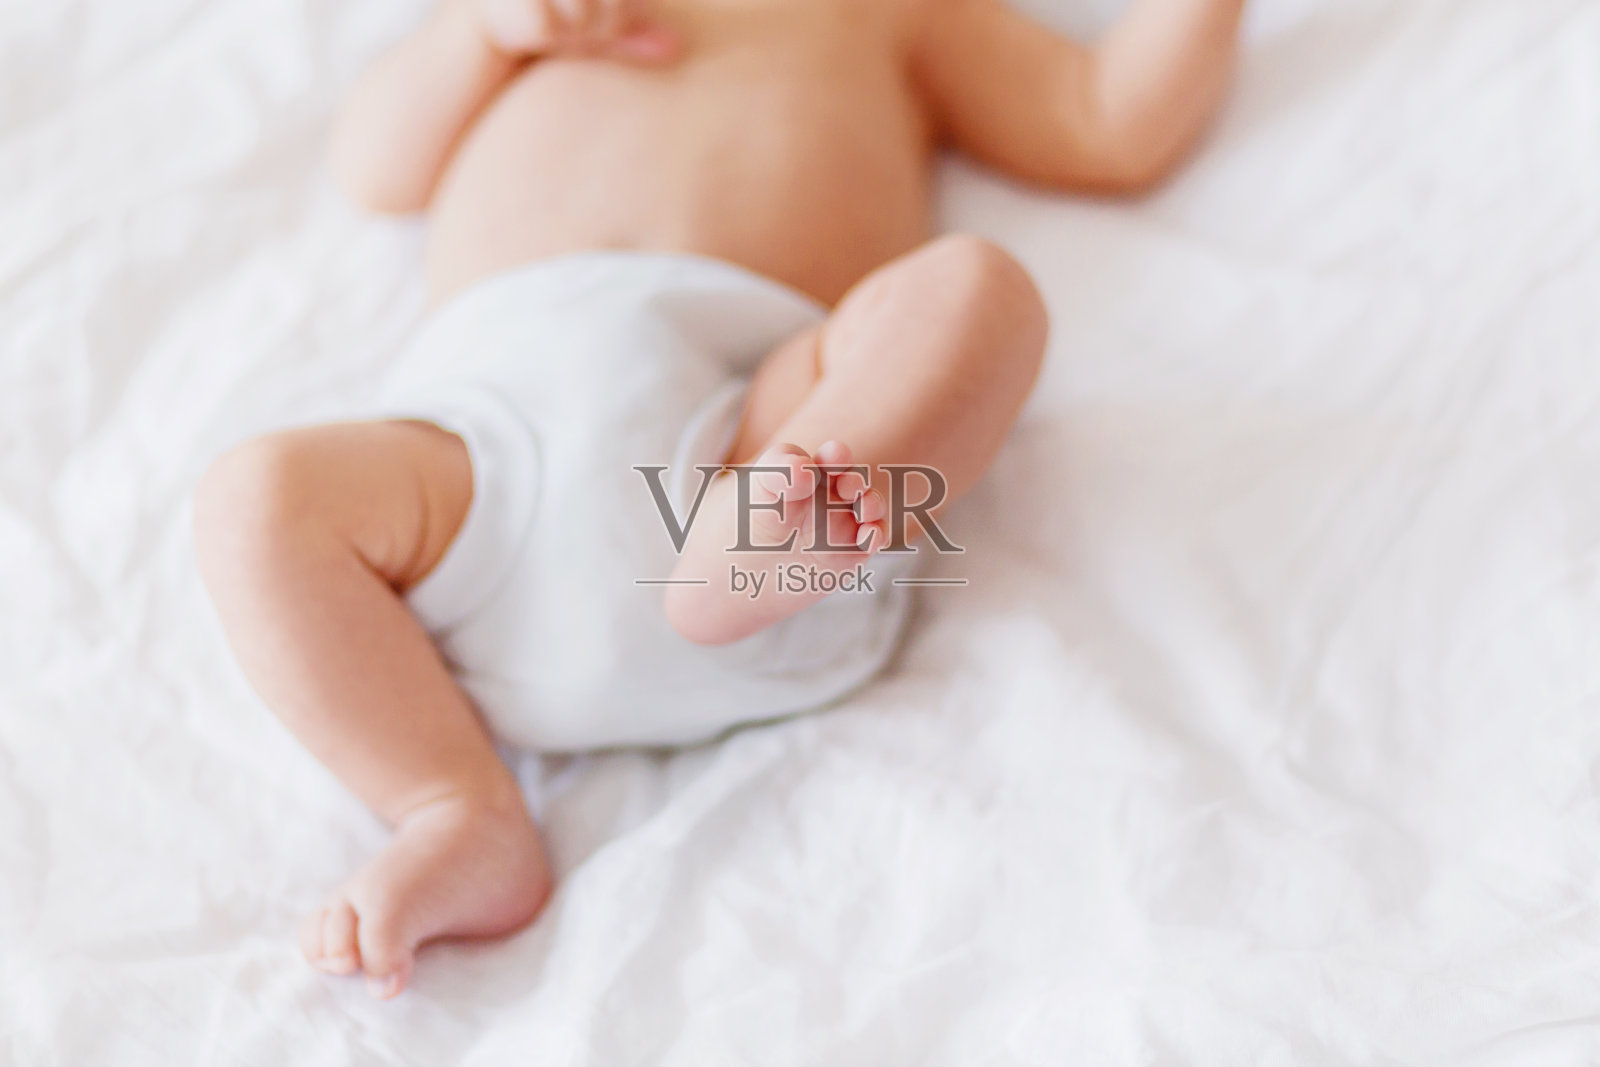 宝宝的脚。穿着白色紧身衣和尿布的小孩。在家舒适的晨间睡觉时间。照片摄影图片